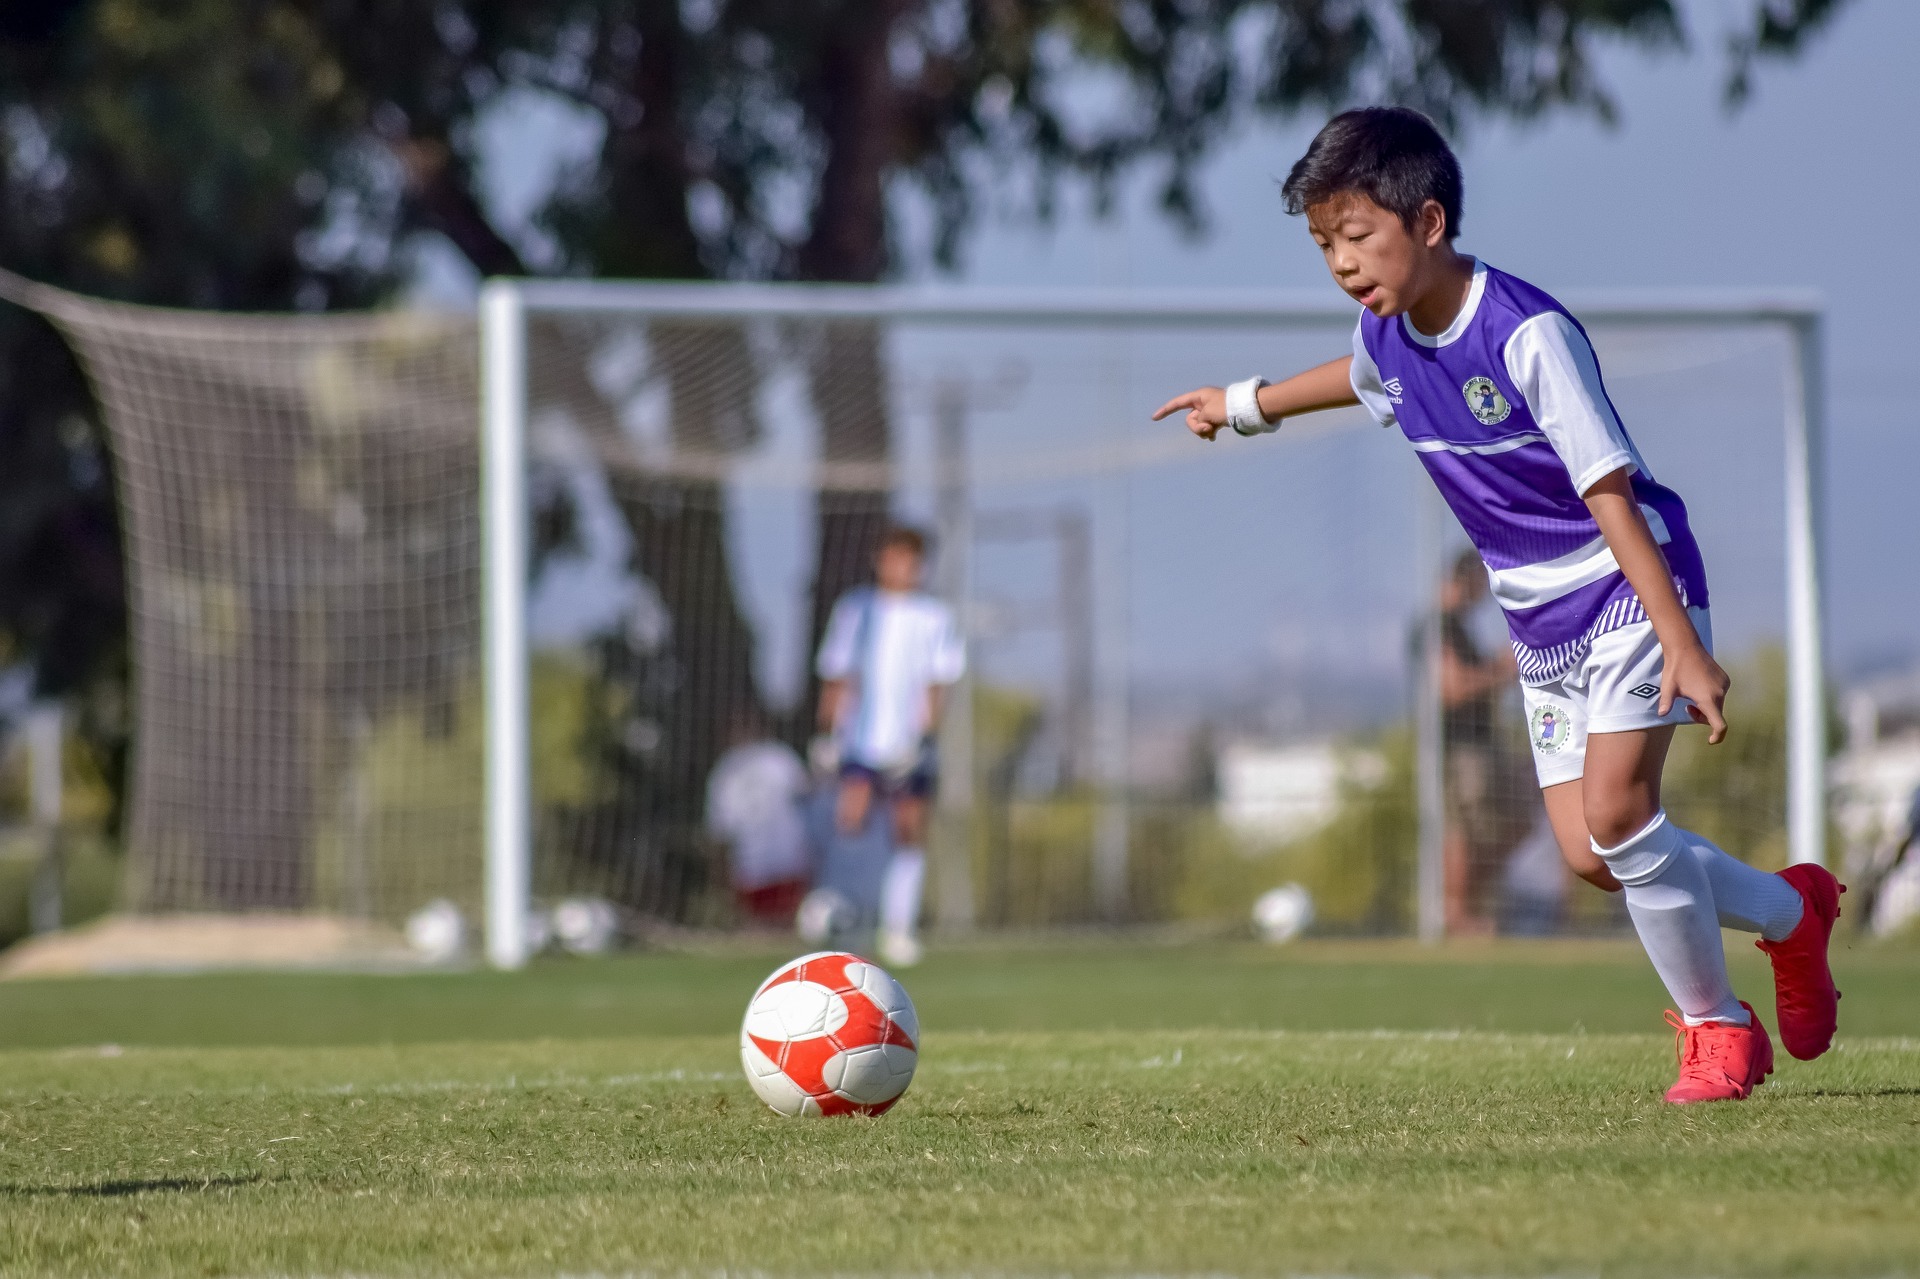 Pembibitan pemain muda, Pemkab Gowa gelar kejuaraan sepak bola Bupati Cup U-12